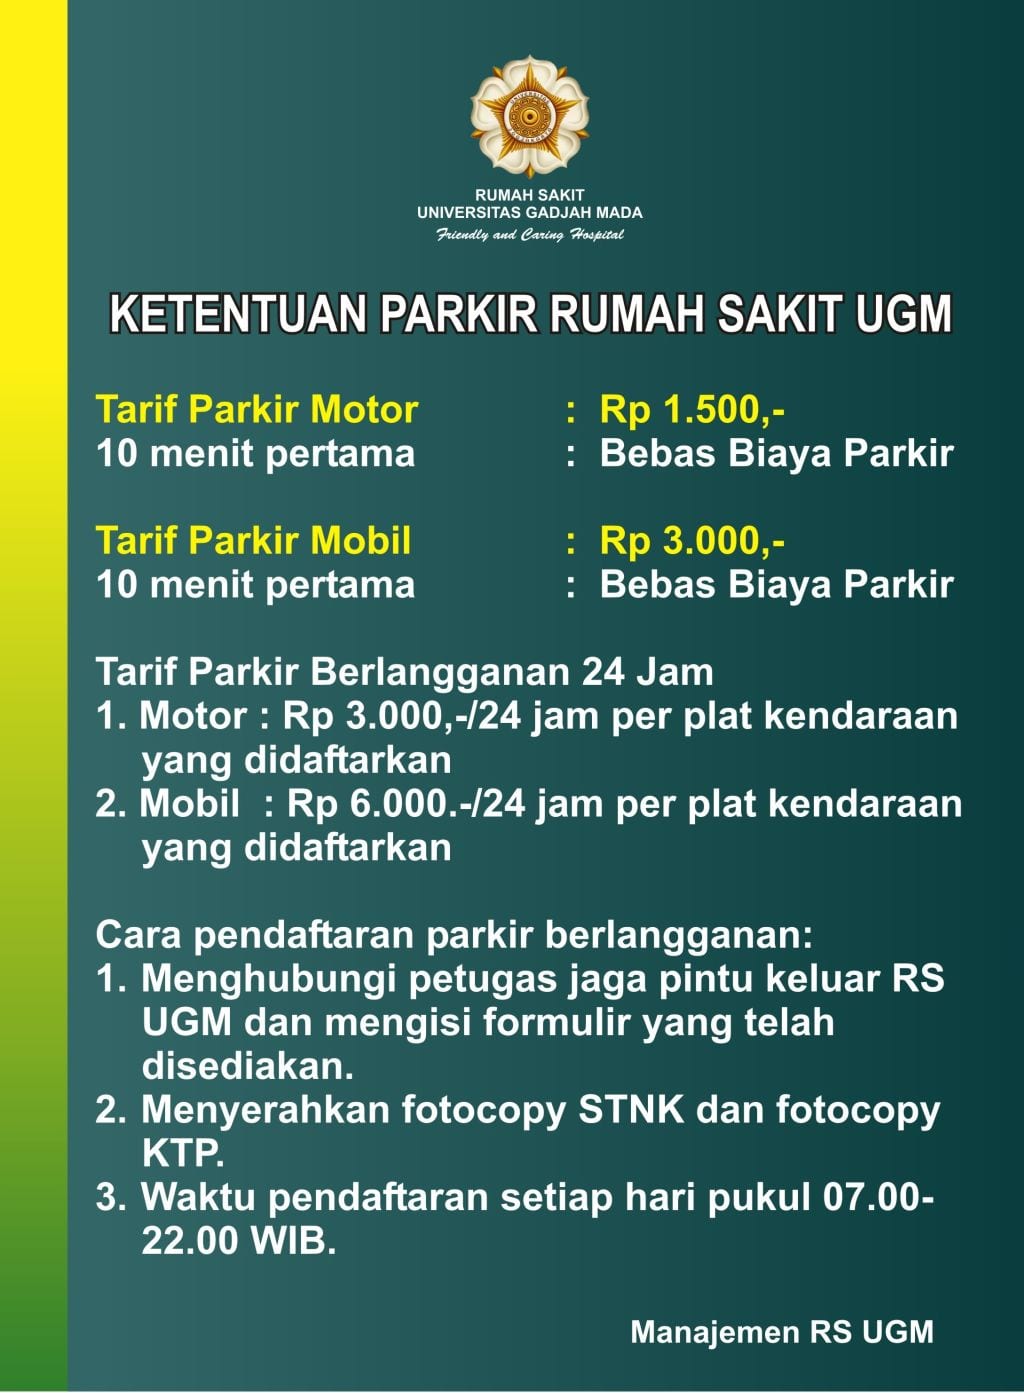 Ketentuan Parkir RS UGM